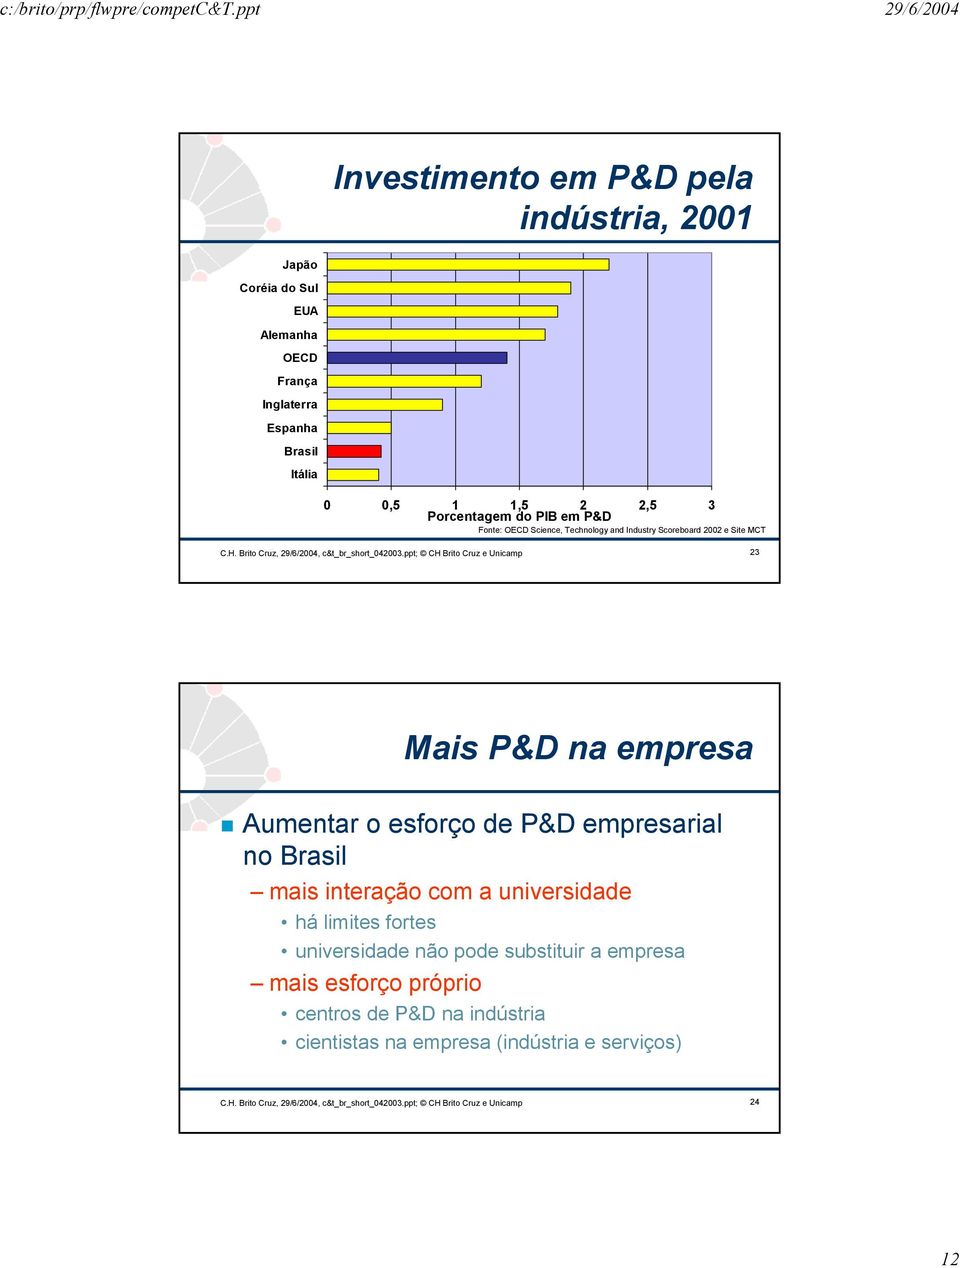 ppt; CH Brito Cruz e Unicamp 23 Mais P&D na empresa Aumentar o esforço de P&D empresarial no Brasil mais interação com a universidade há limites fortes